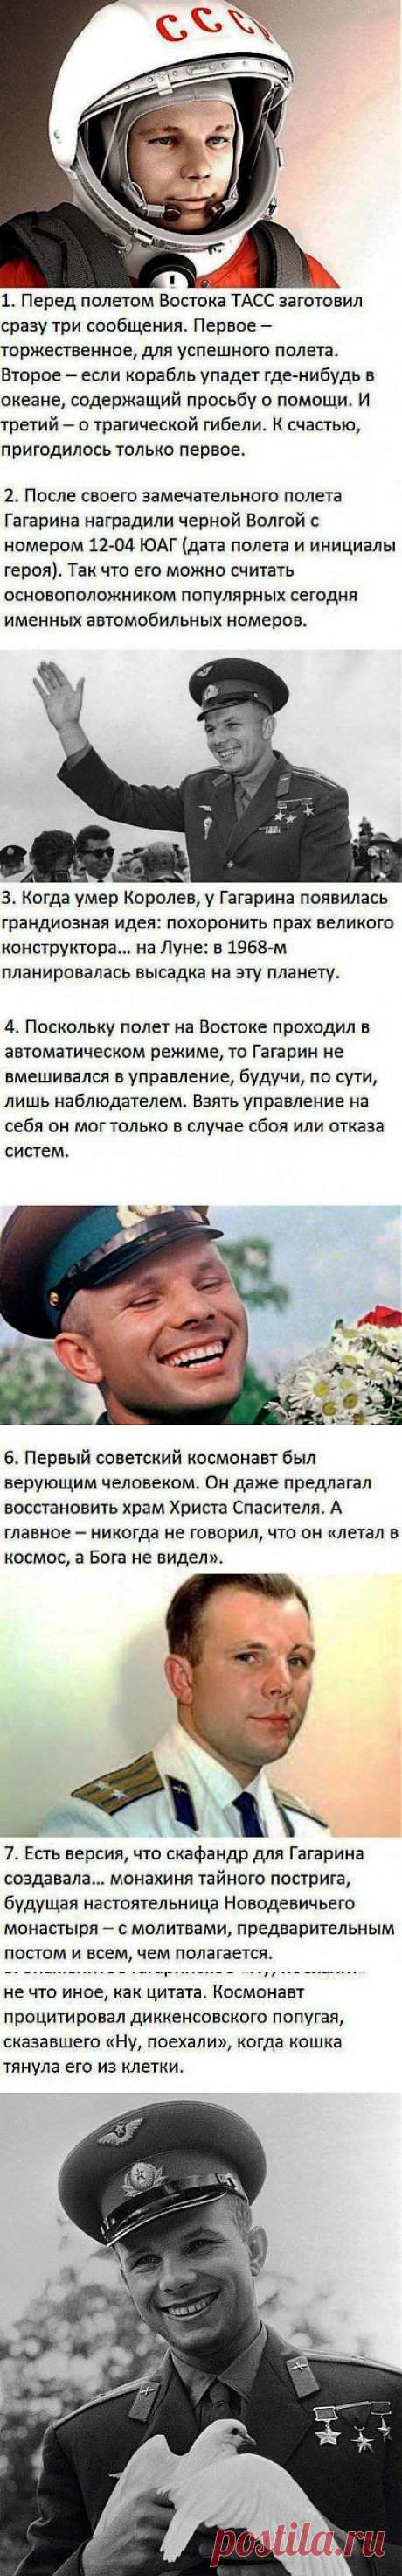 Интересные факты из жизни Юрия Гагарина / Шоубиз